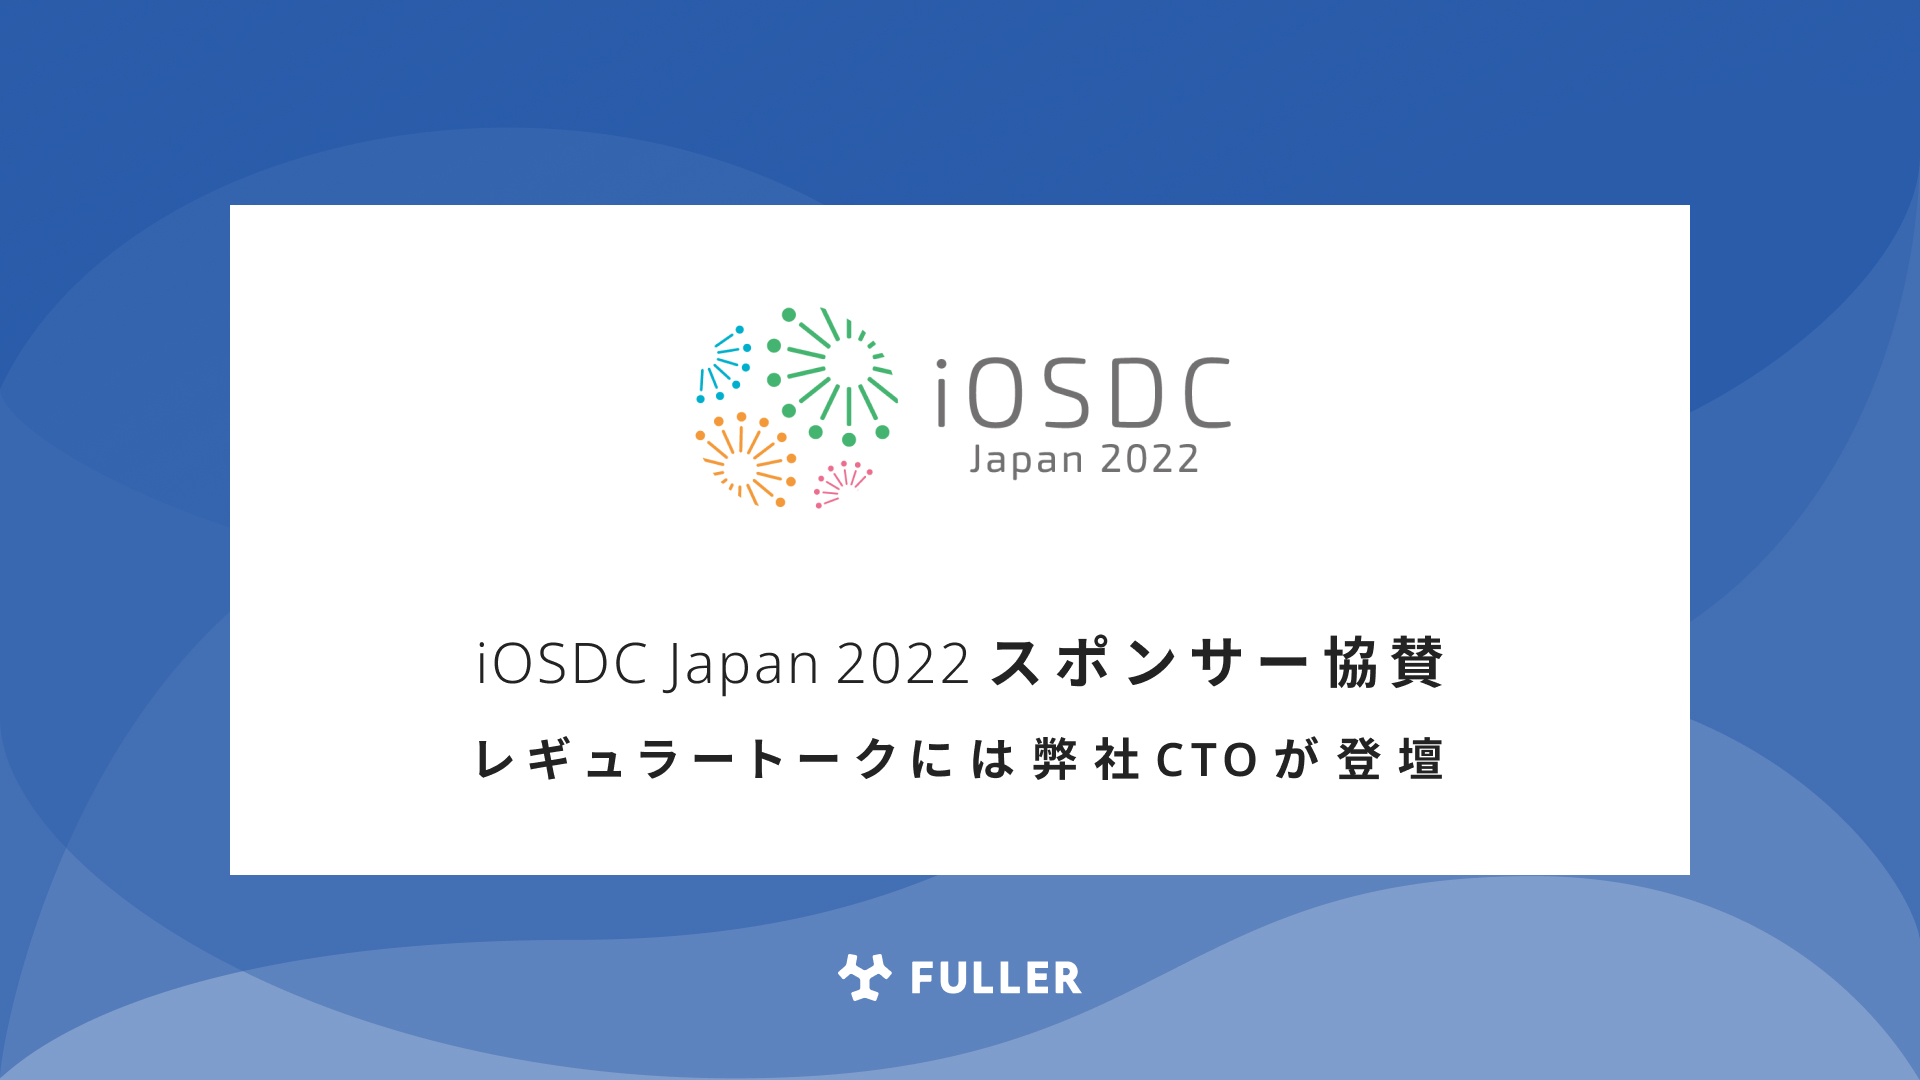 フラー、iOSDC Japan 2022にスポンサー協賛。レギュラートークにはCTOが登壇。